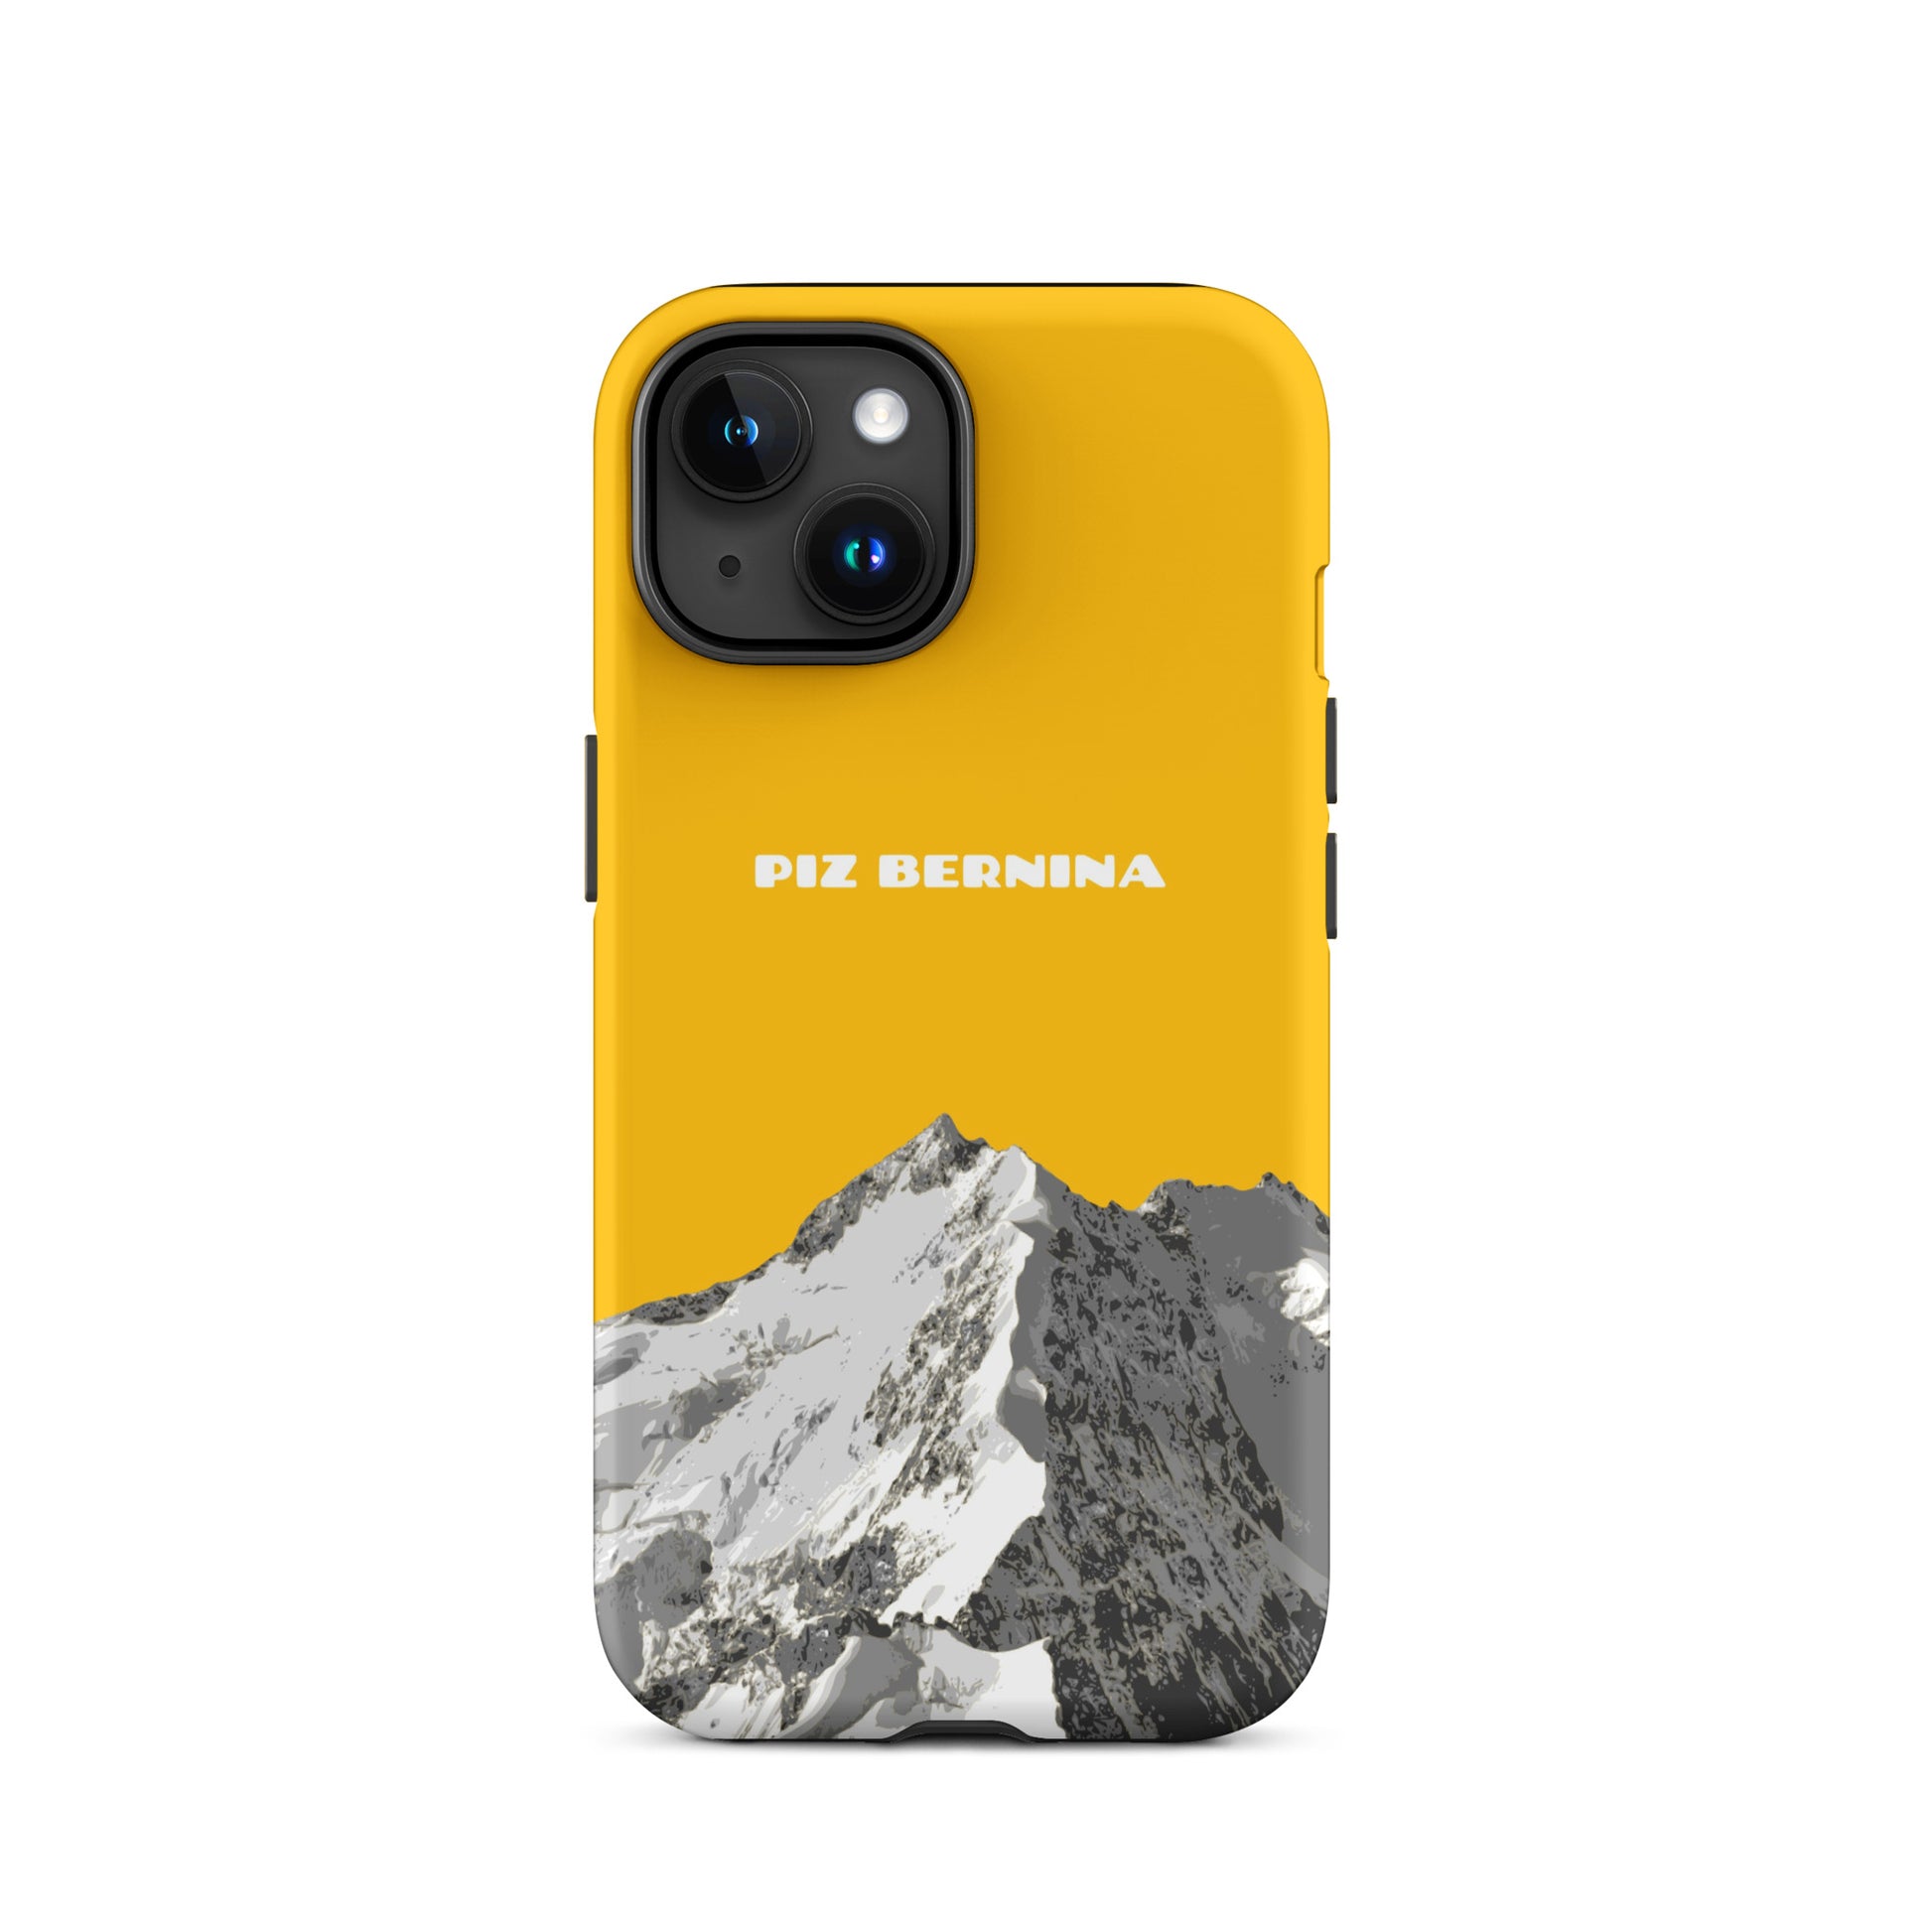 Hülle für das iPhone 15 von Apple in der Farbe Goldgelb, dass den Piz Bernina in Graubünden zeigt.